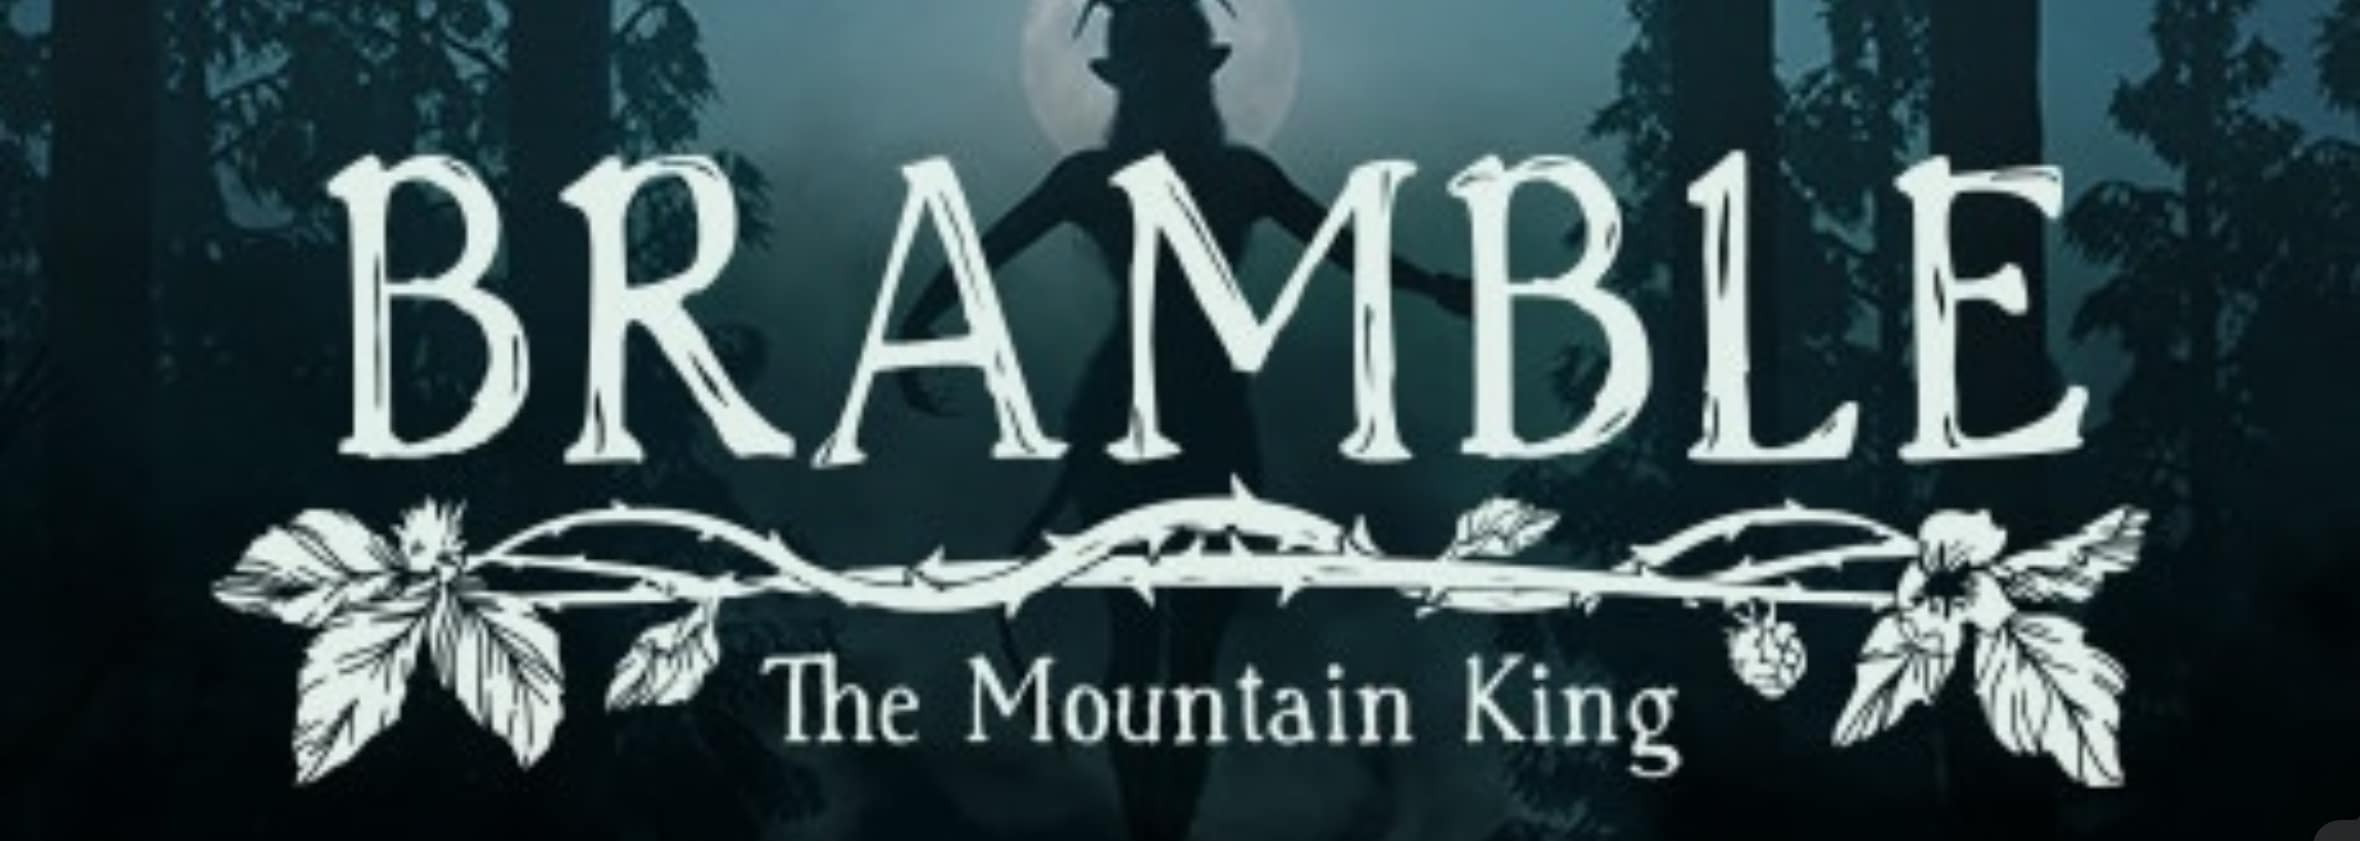 bramble: The Mountain King